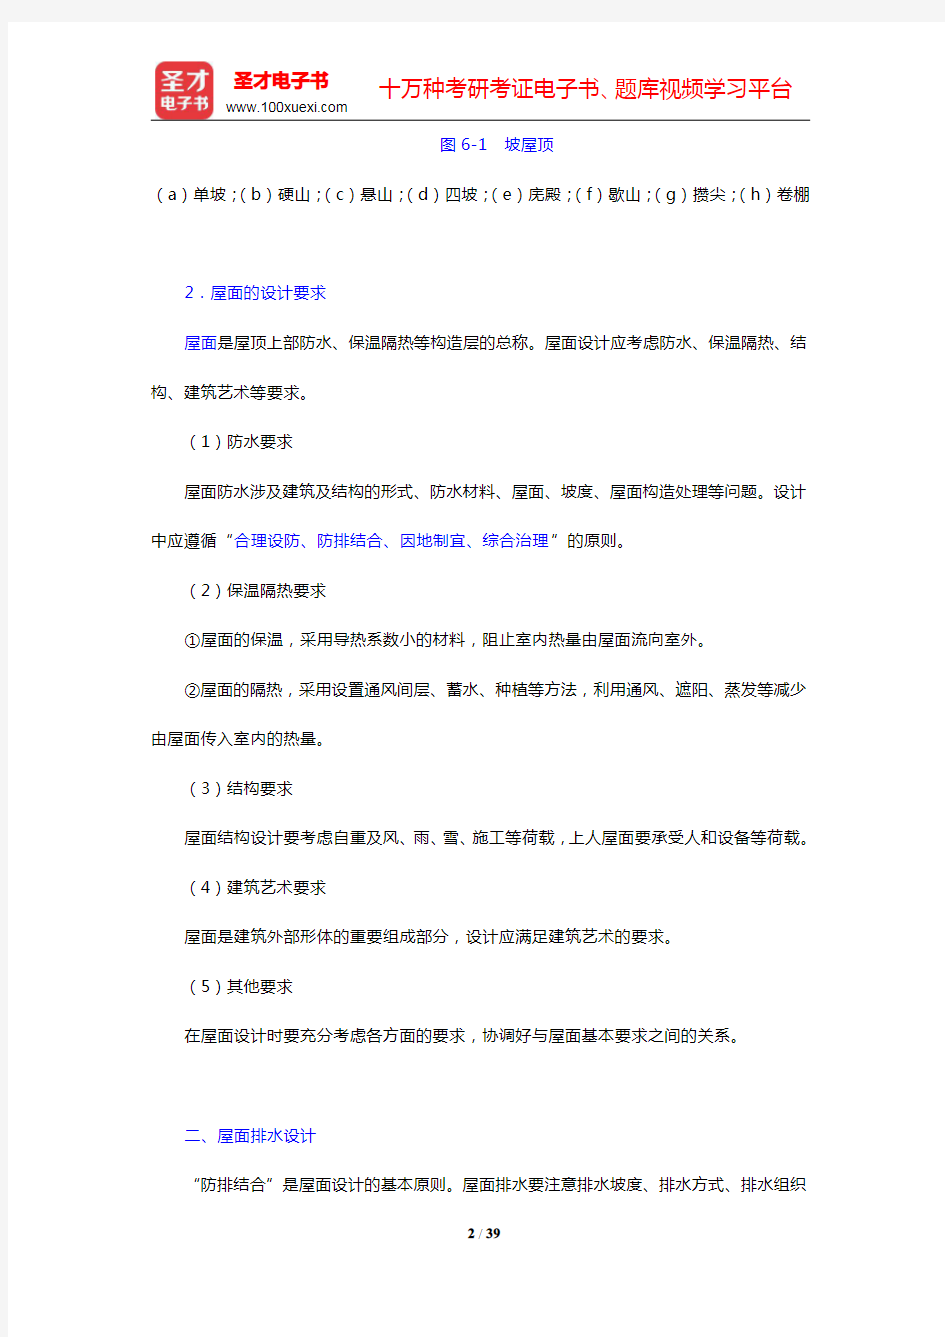 重庆大学《建筑构造(上册)》(第5版)-屋顶笔记和课后习题详解(圣才出品)